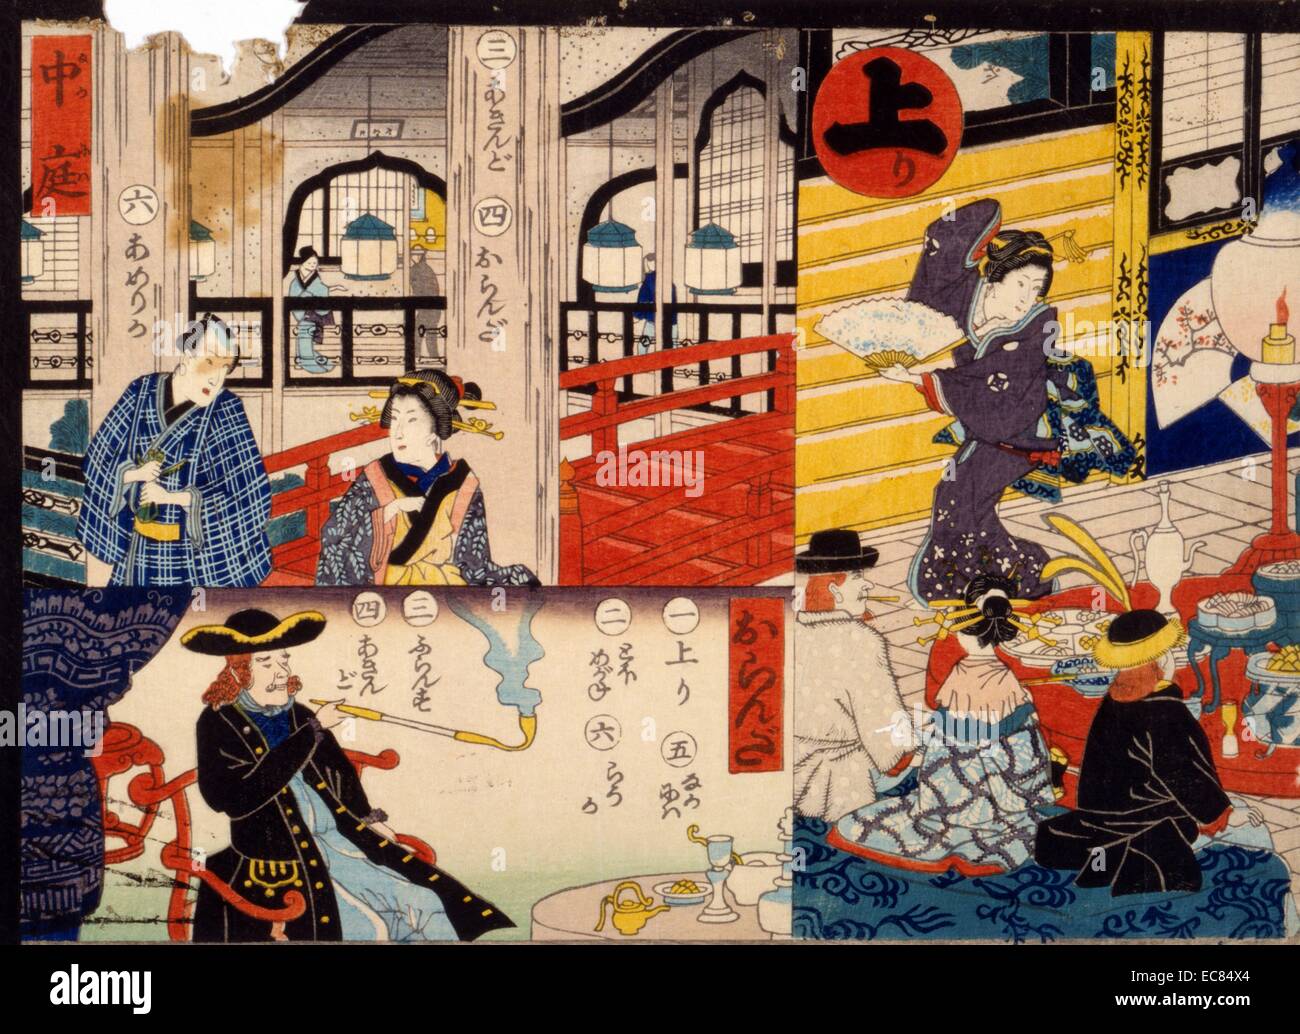 Giapponese colorate a mano la xilografia. L'immagine mostra un numero di scene da un giapponese di gioco da tavolo chiamato Sugoroku. Una scena mostra un uomo e una donna a piedi nei pressi di un ponte. Un altro mostra un western fumatori maschi di un tubo. L'ultima mostra un giapponese geisha divertente uomini. Datata c1865 Foto Stock